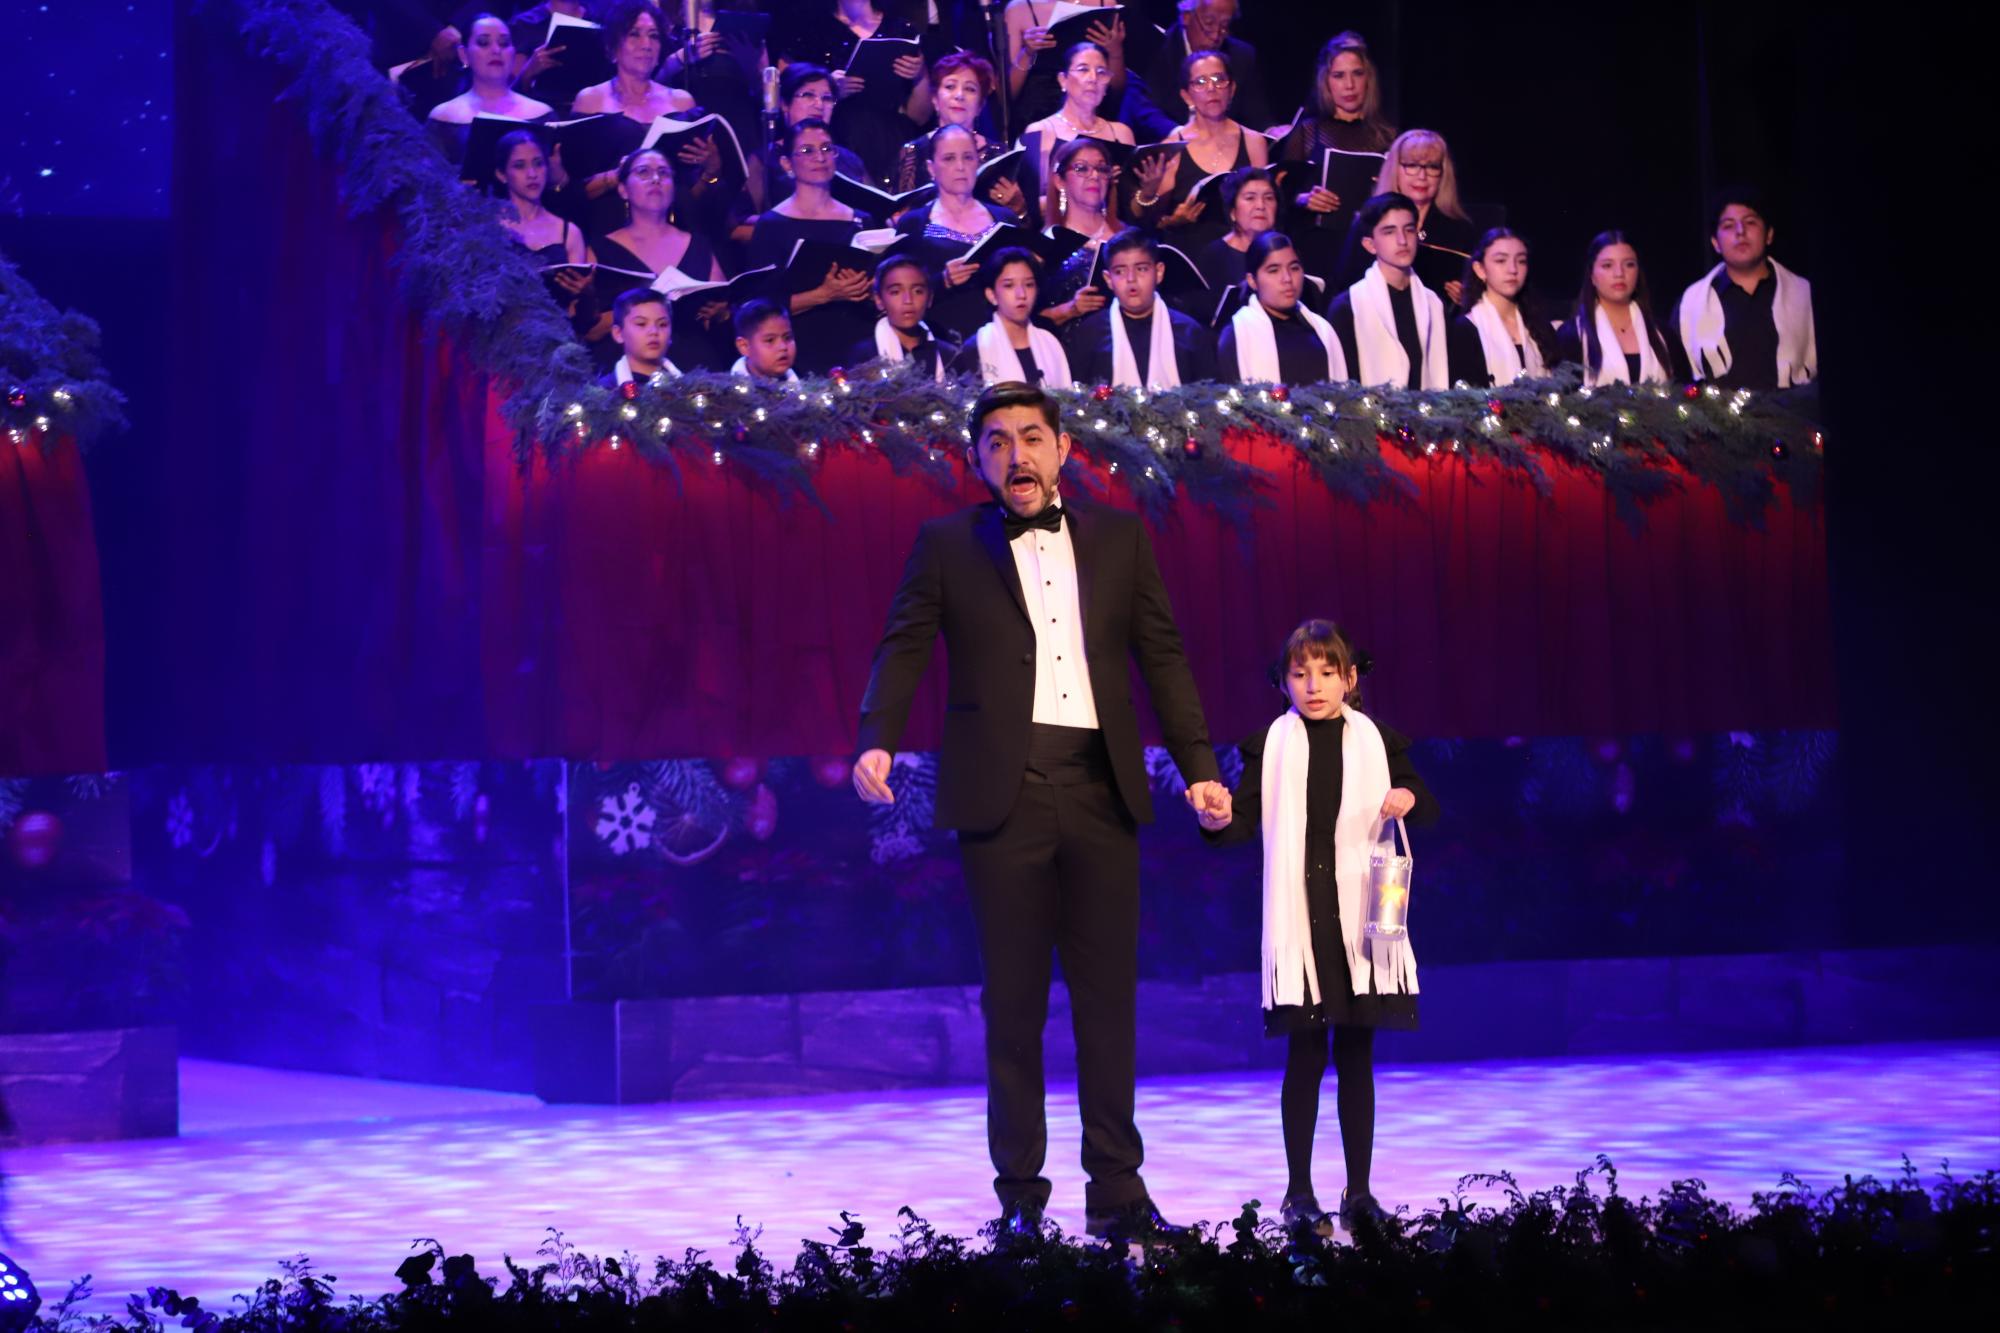 $!El tenor Eduardo Tapia de la mano de la pequeña Greta Mariela Hernández Angulo, llenaron de luz el escenario con la melodía “El farolito”.